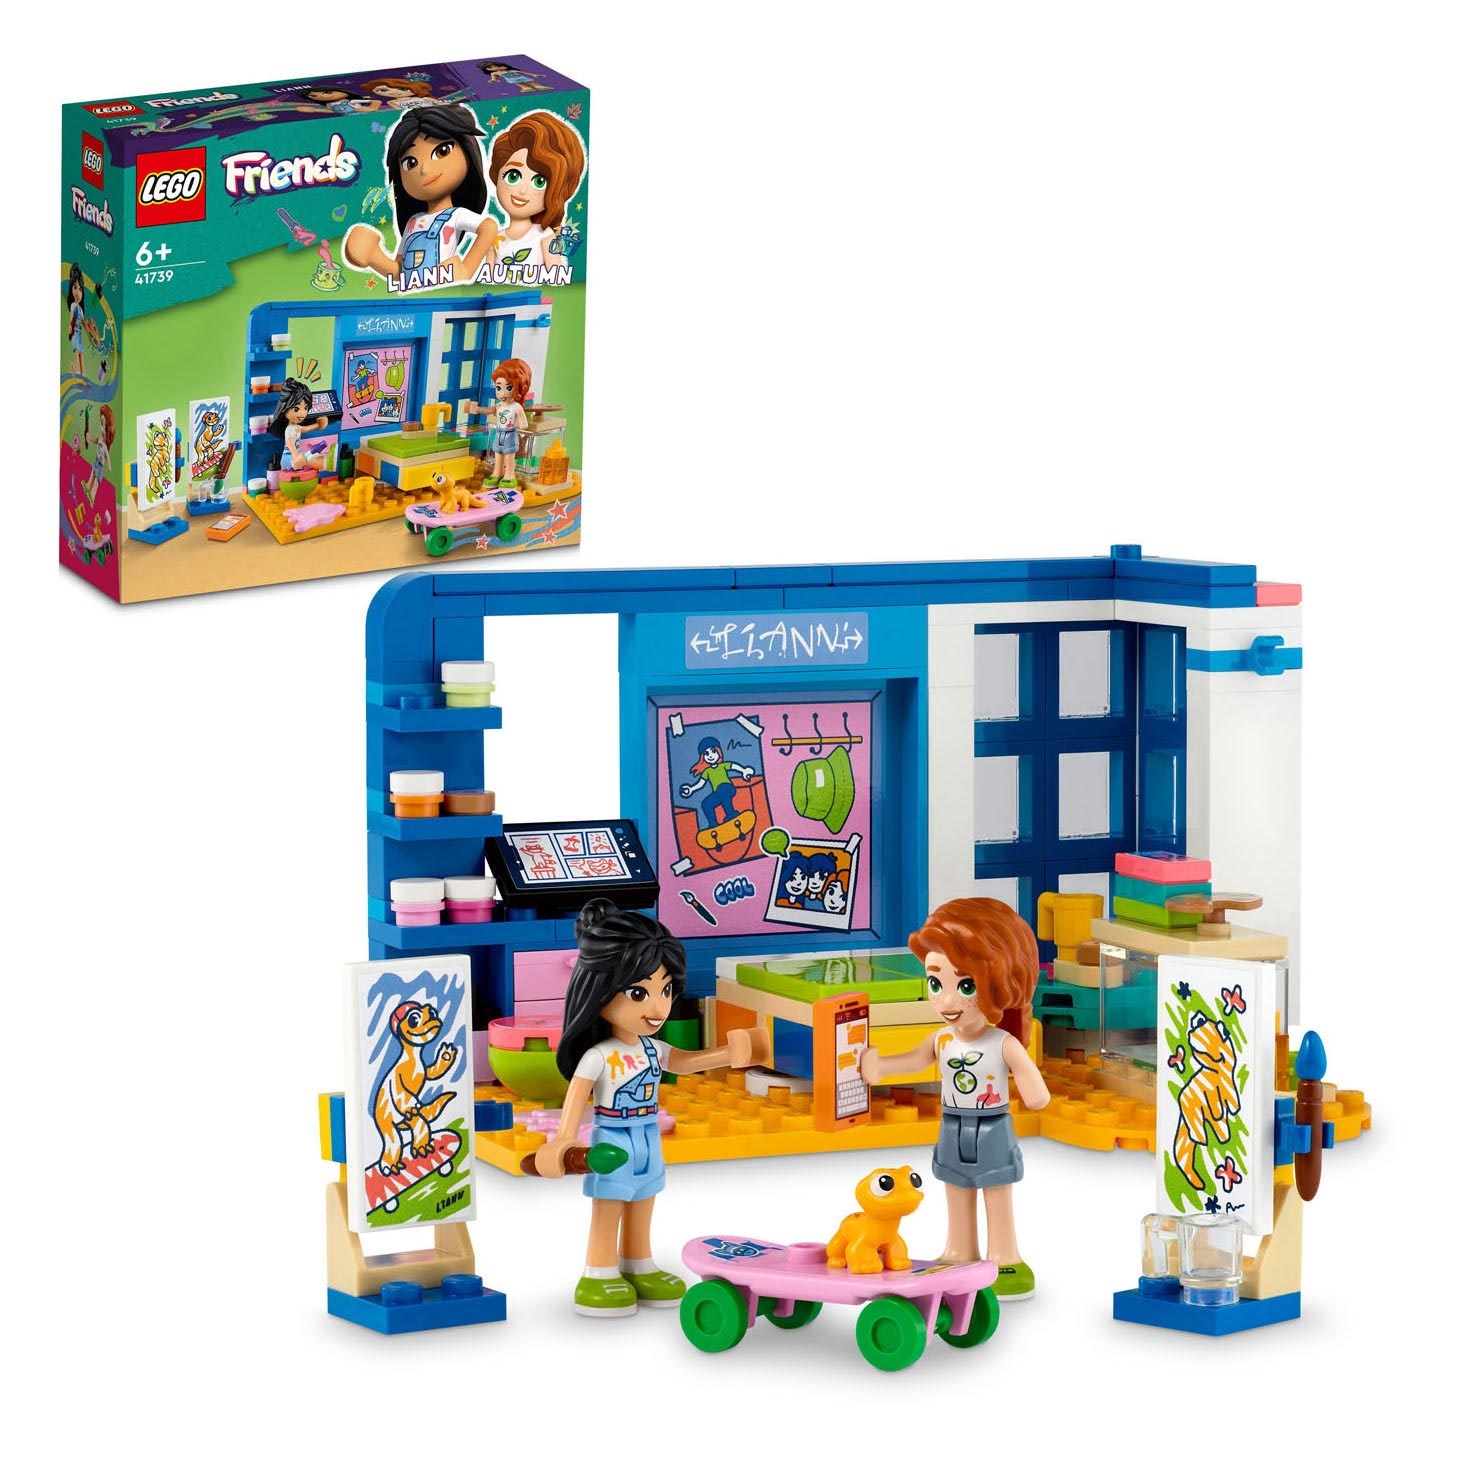 Botsing brand vreemd LEGO Friends 41739 Lianns Kamer online ... | Lobbes Speelgoed België